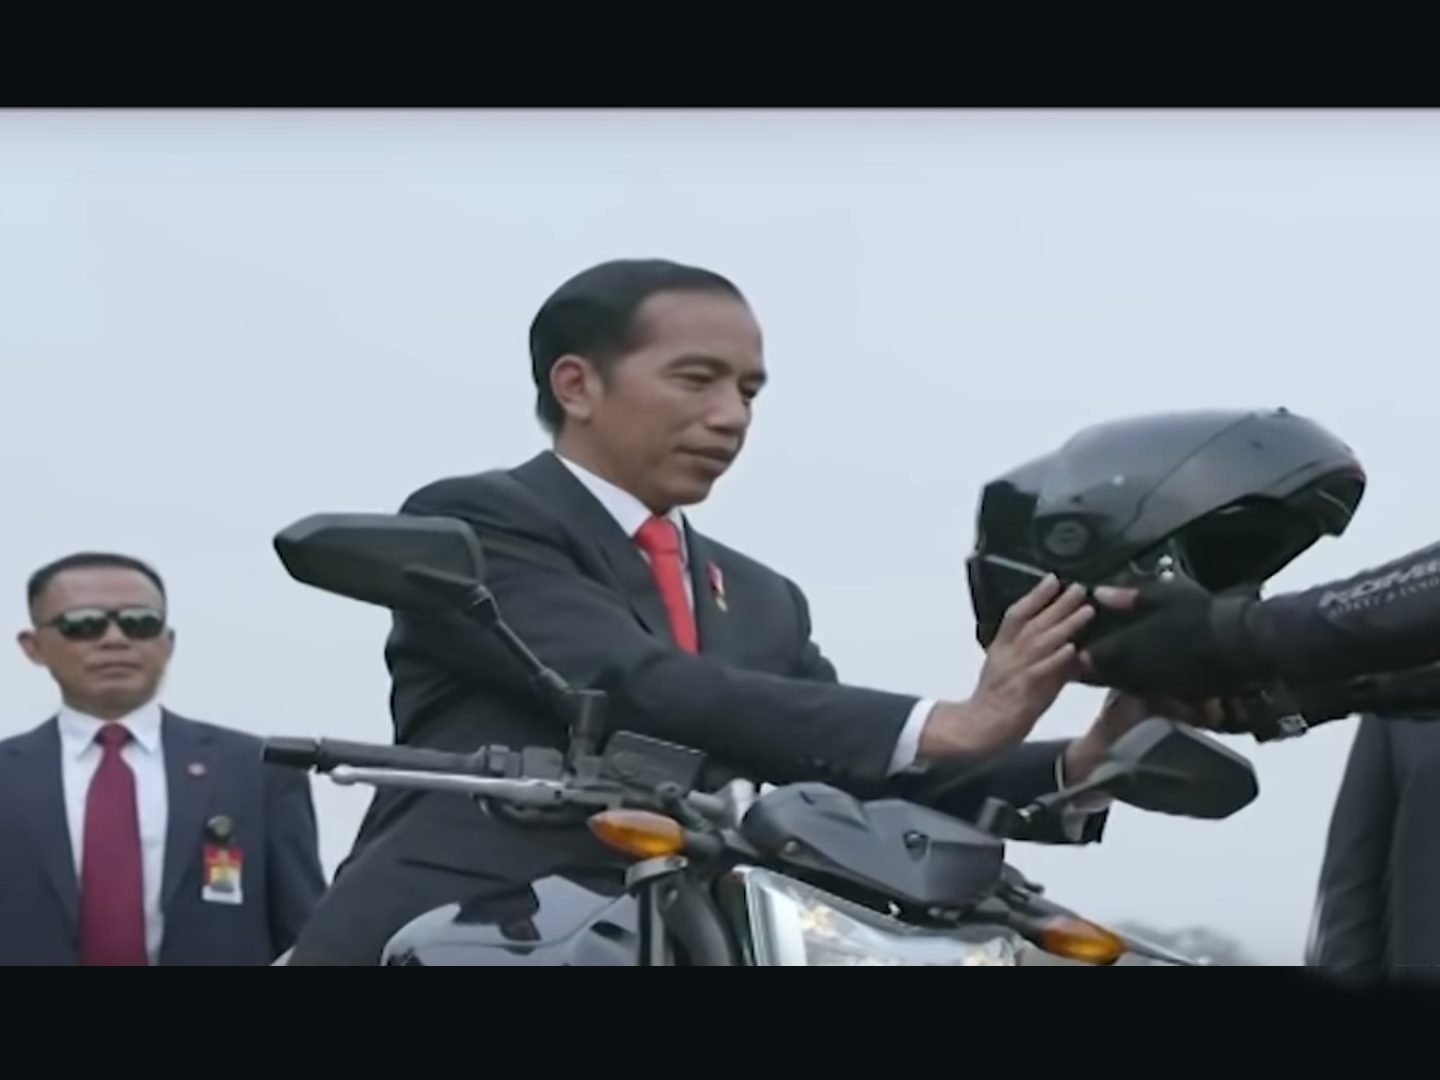 Ο πρόεδρος της Ινδονησίας είναι… μοτοκάγκουρας!